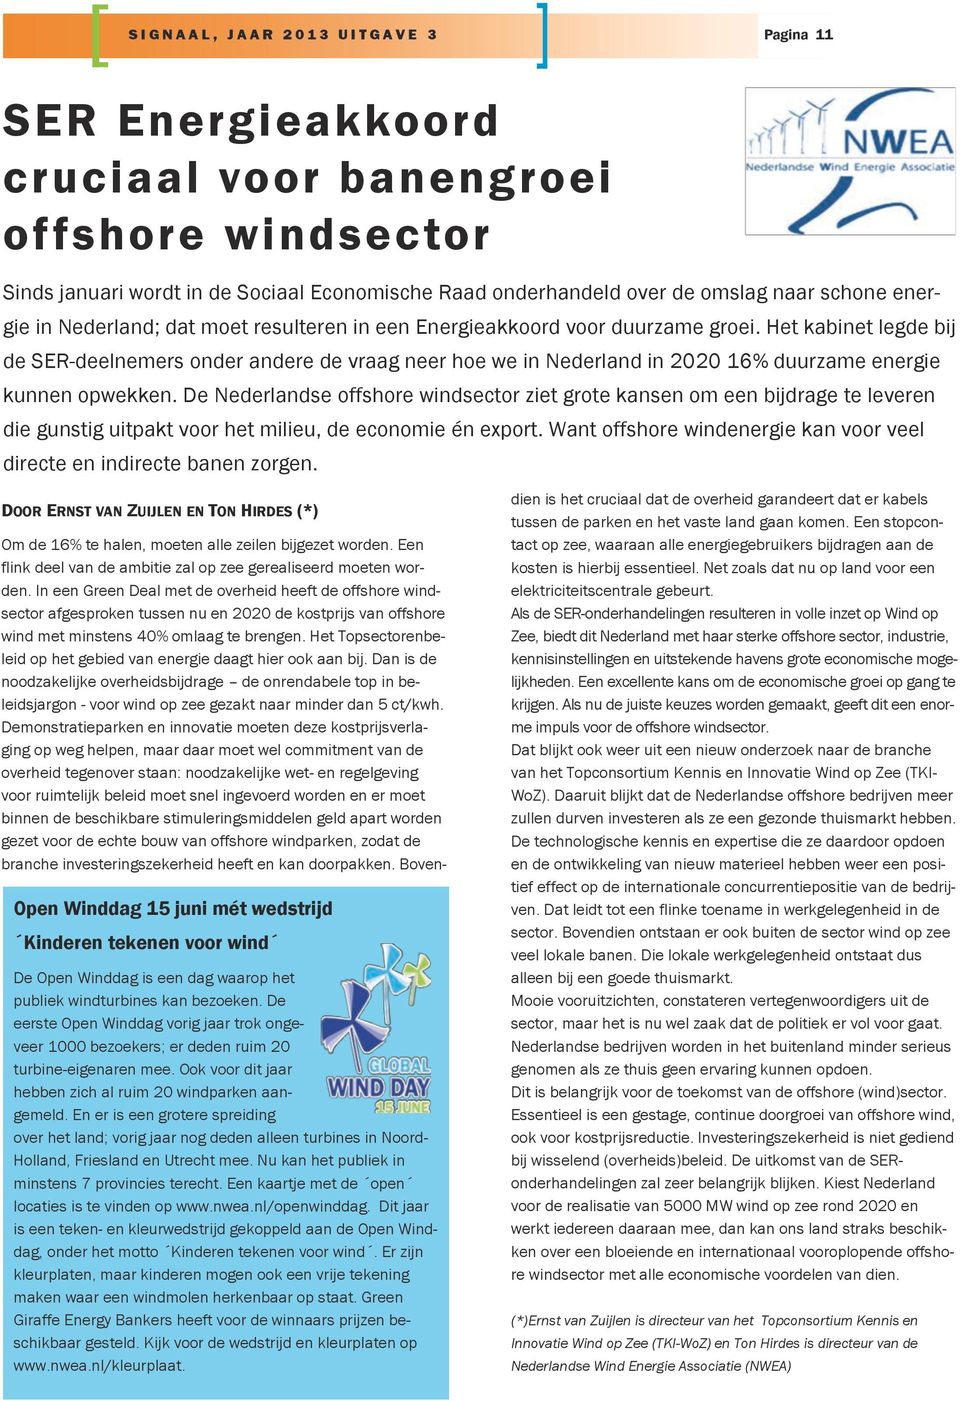 De Nederlandse offshore windsector ziet grote kansen om een bijdrage te leveren die gunstig uitpakt voor het milieu, de economie én export.